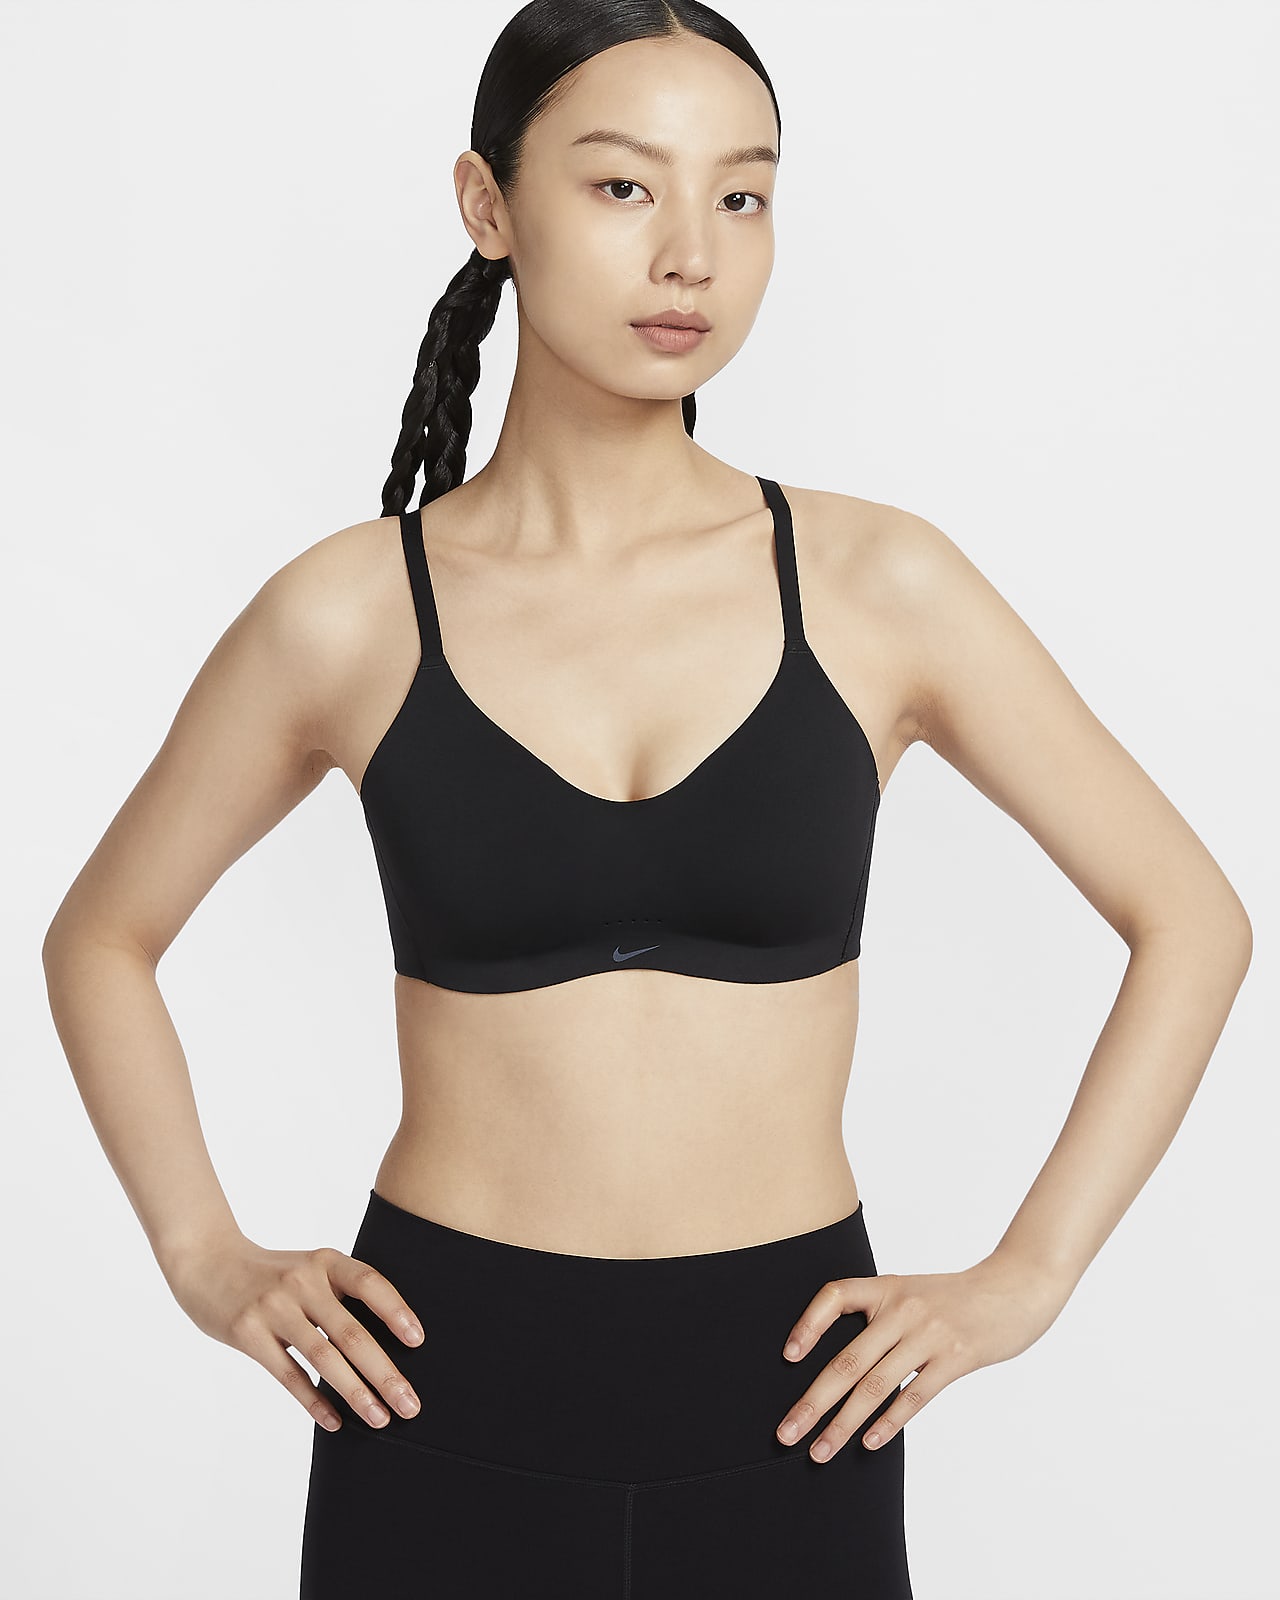 Nike Alate Minimalist Women's Light-Support Padded Convertible Sports Bra